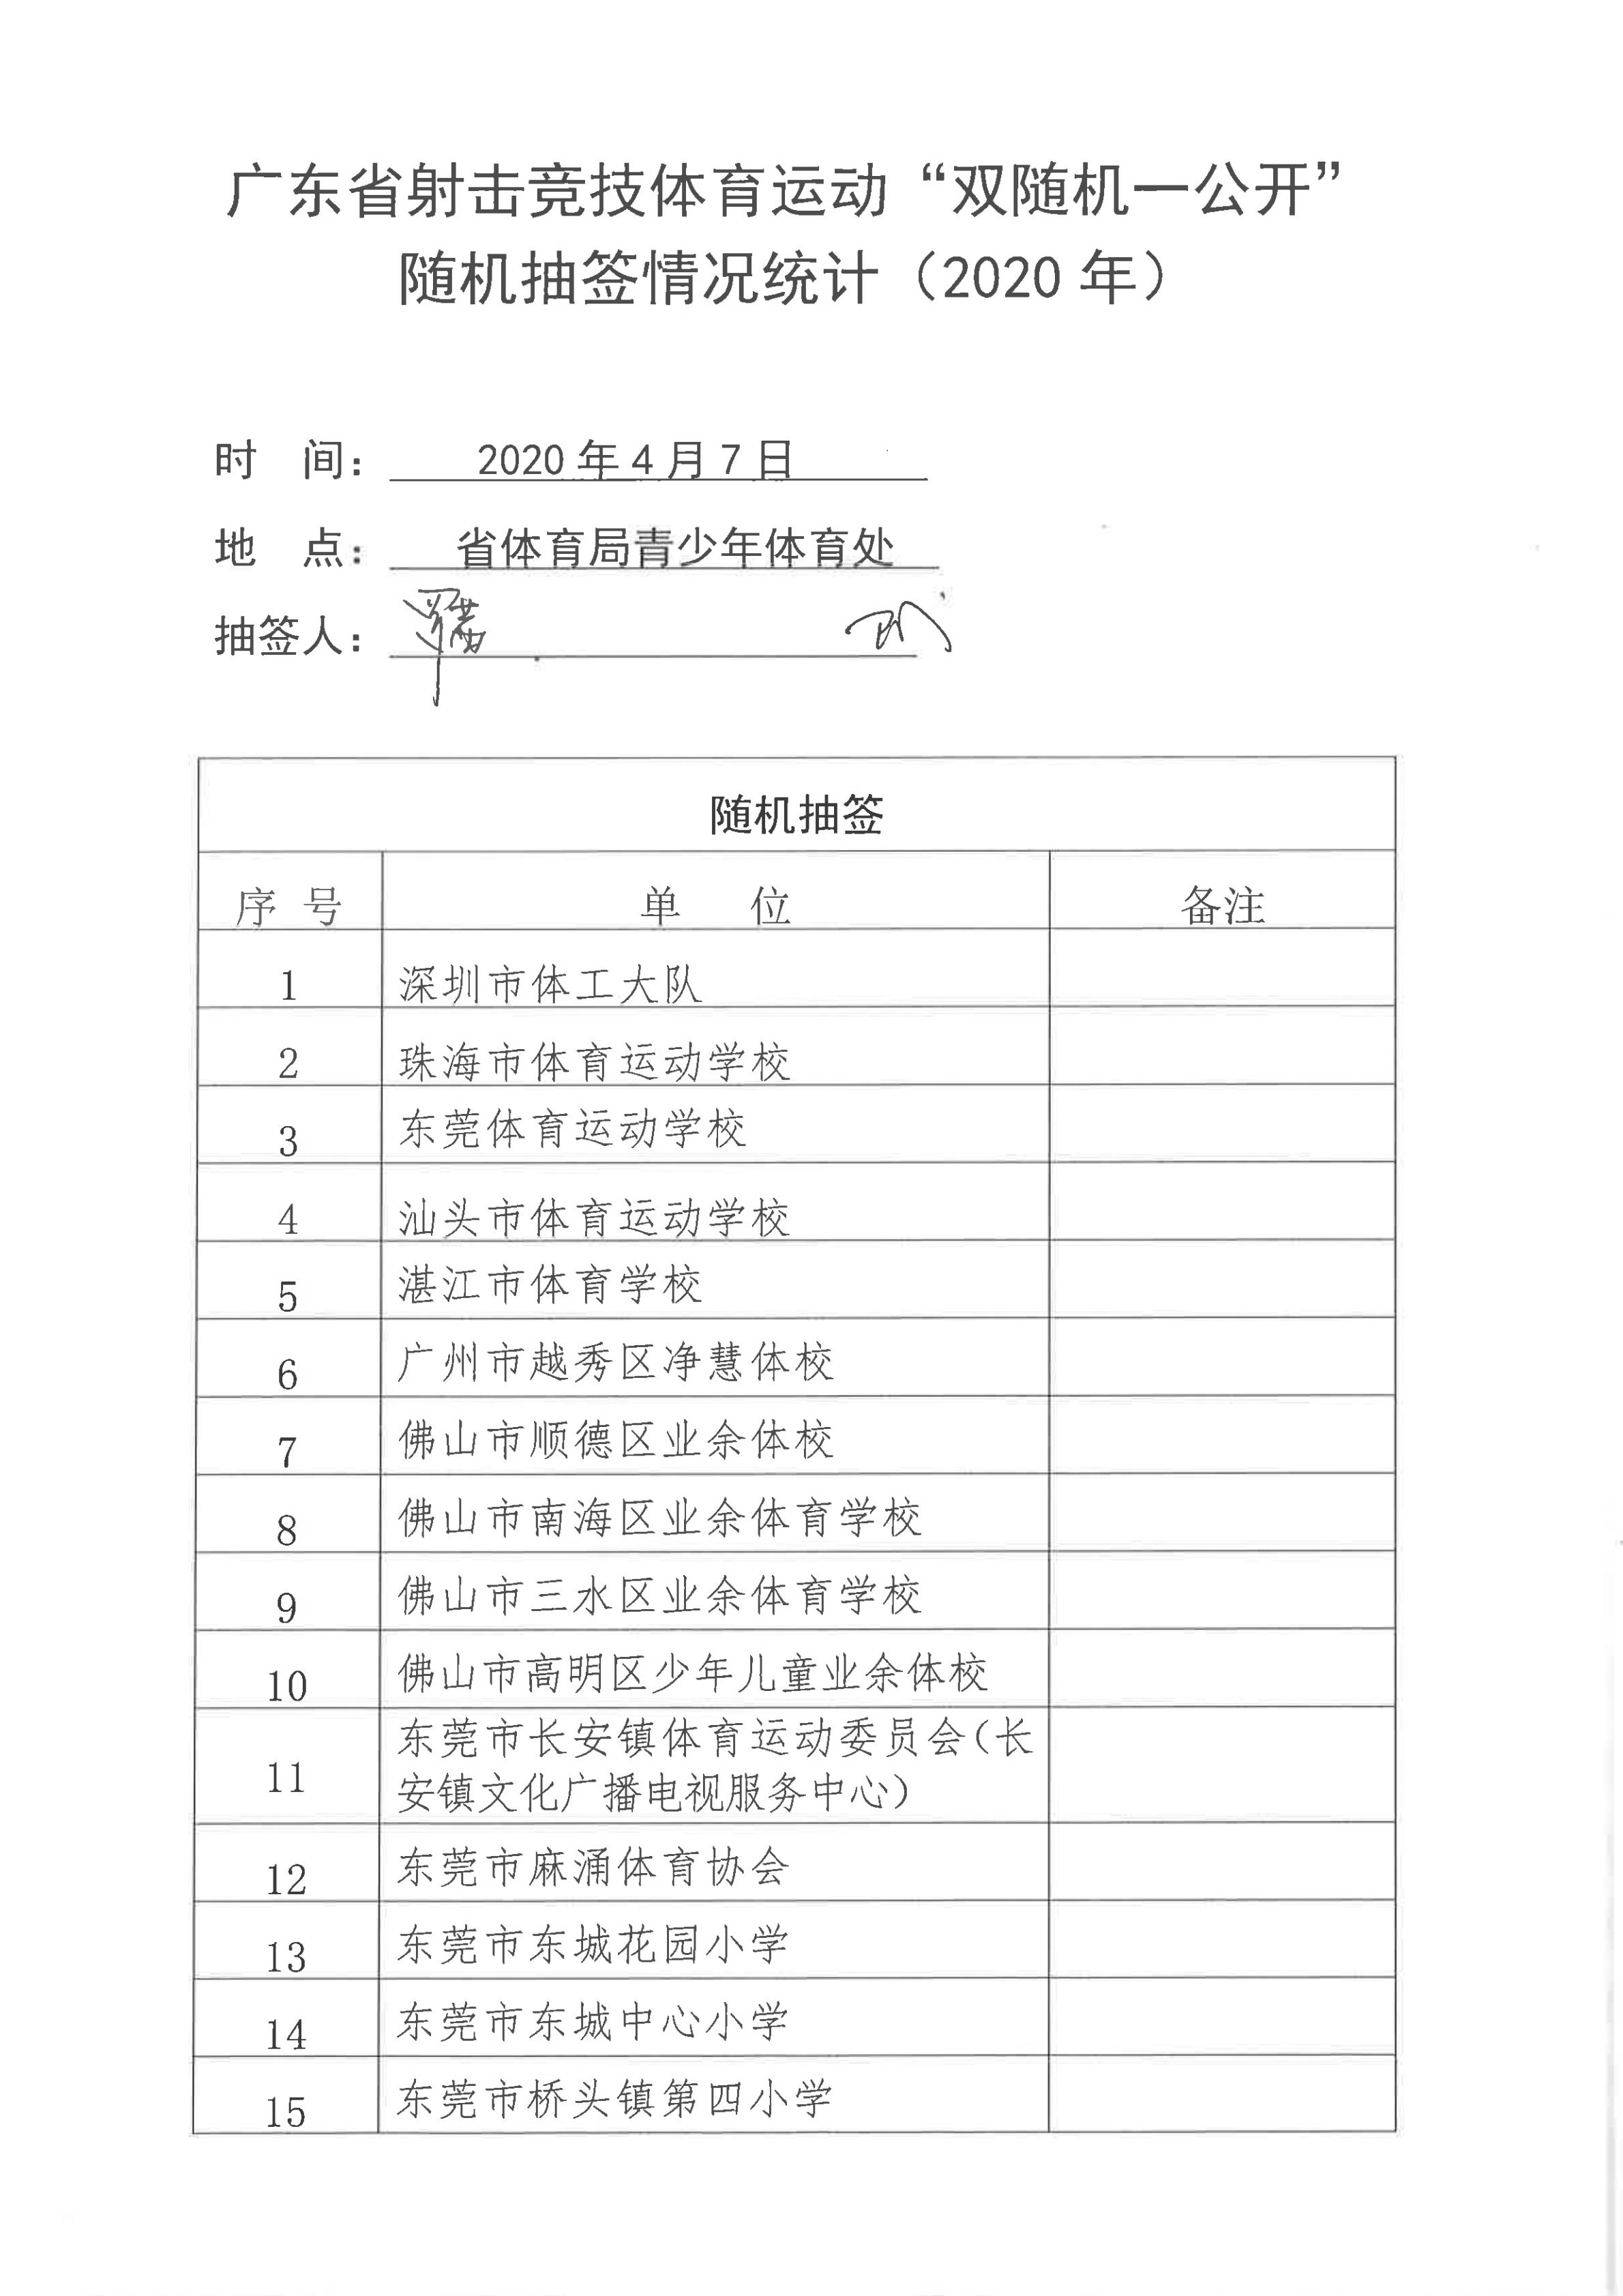 广东省射击竞技体育运动“双随机一公开”随机抽签情况统计（2020年）_00.jpg